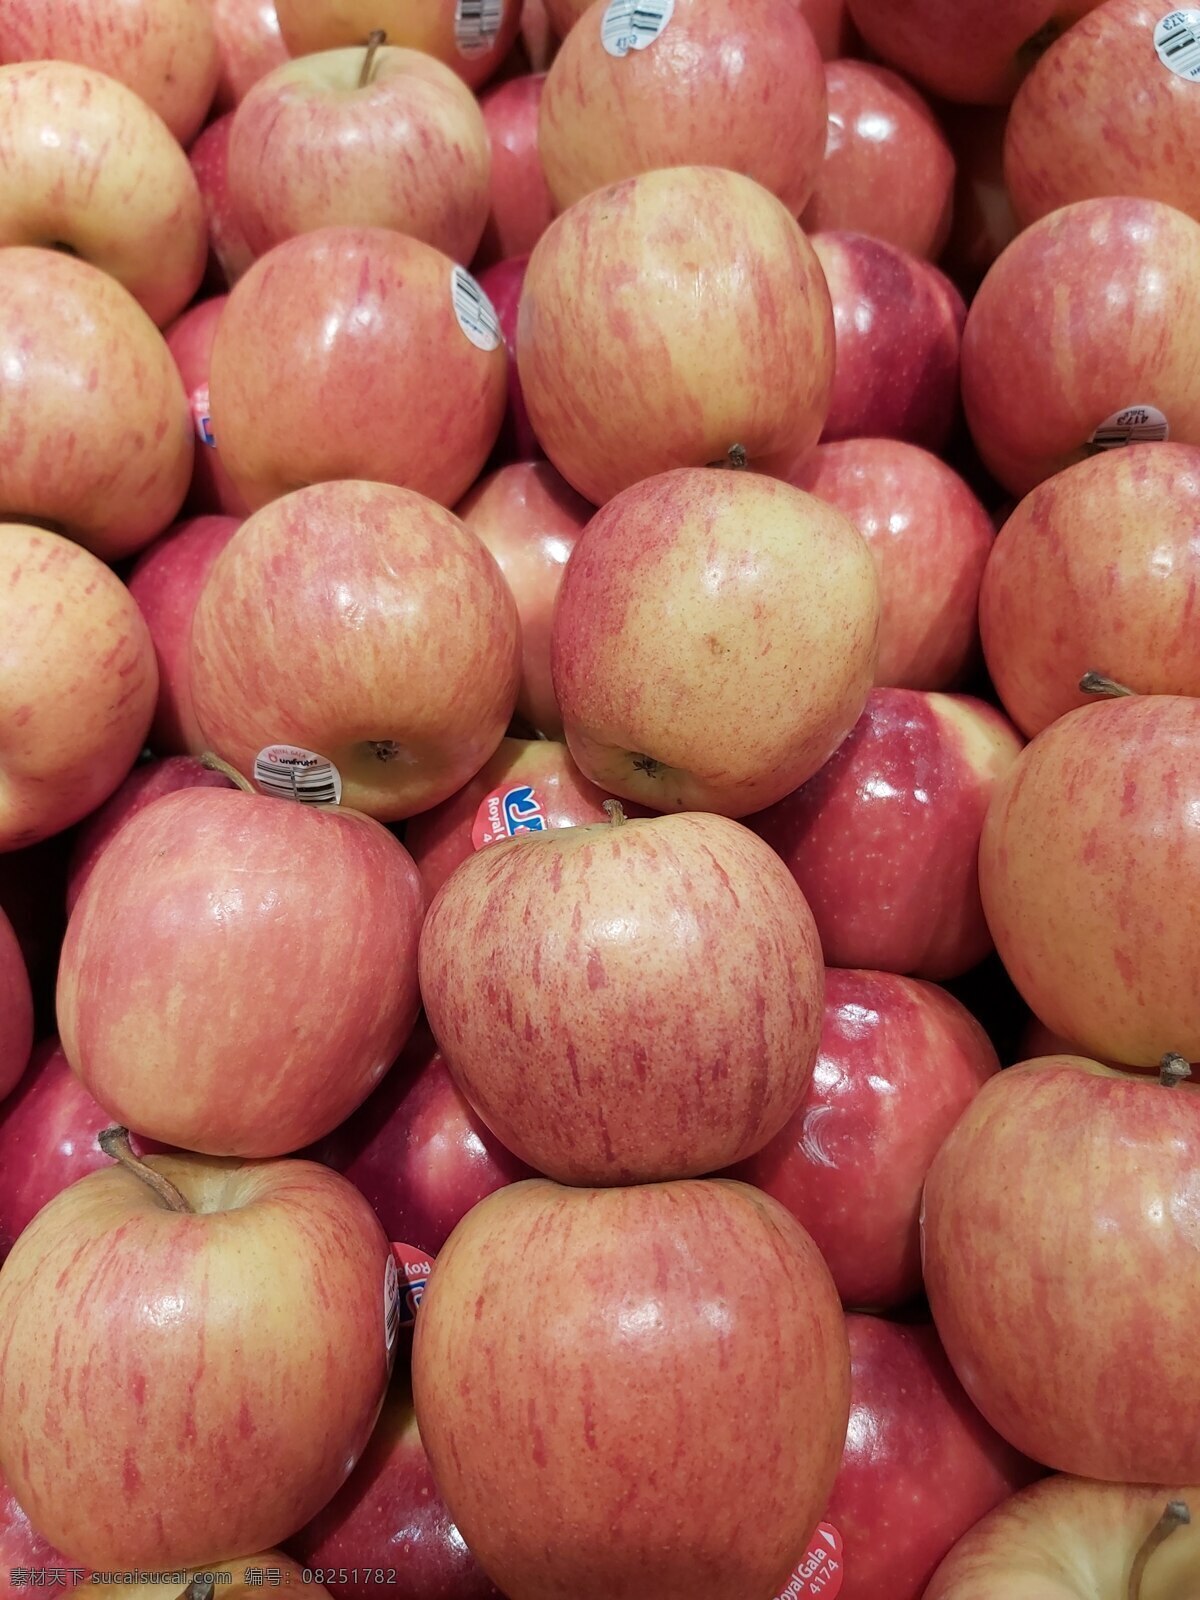 野生苹果 红富士 红苹果 夏苹果 丑苹果 嘎啦苹果 新鲜苹果 烟台苹果 富士苹果 水晶红富士 果园 生物世界 水果